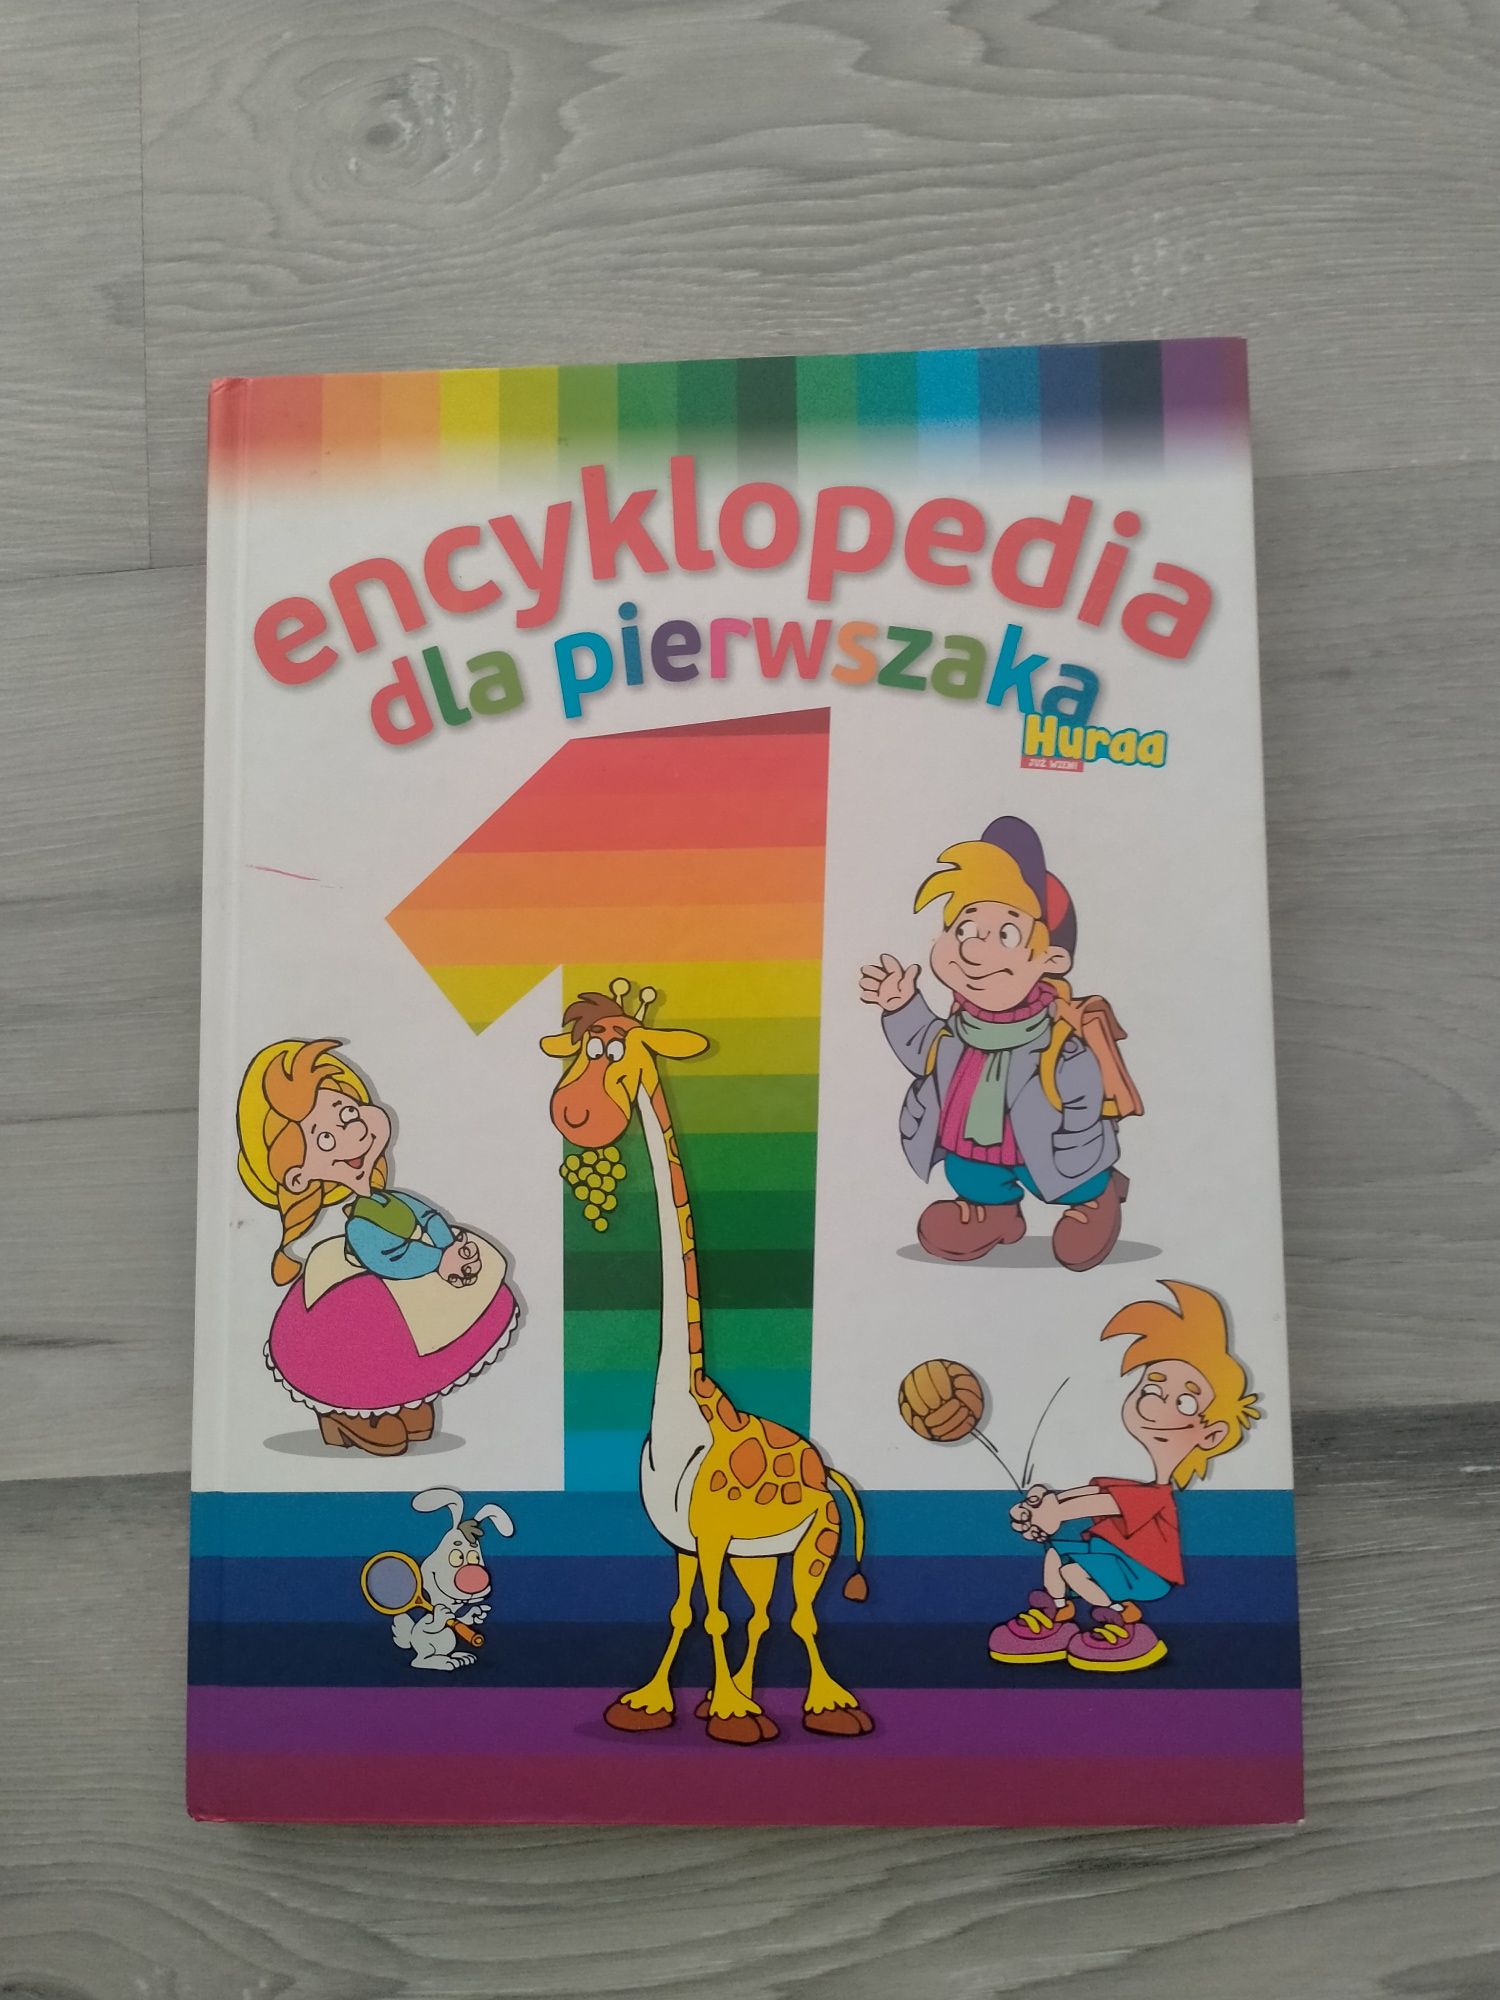 Encyklopedia dla pierwszaka. Dla dzieci w wieku wczesnoszkolnym.